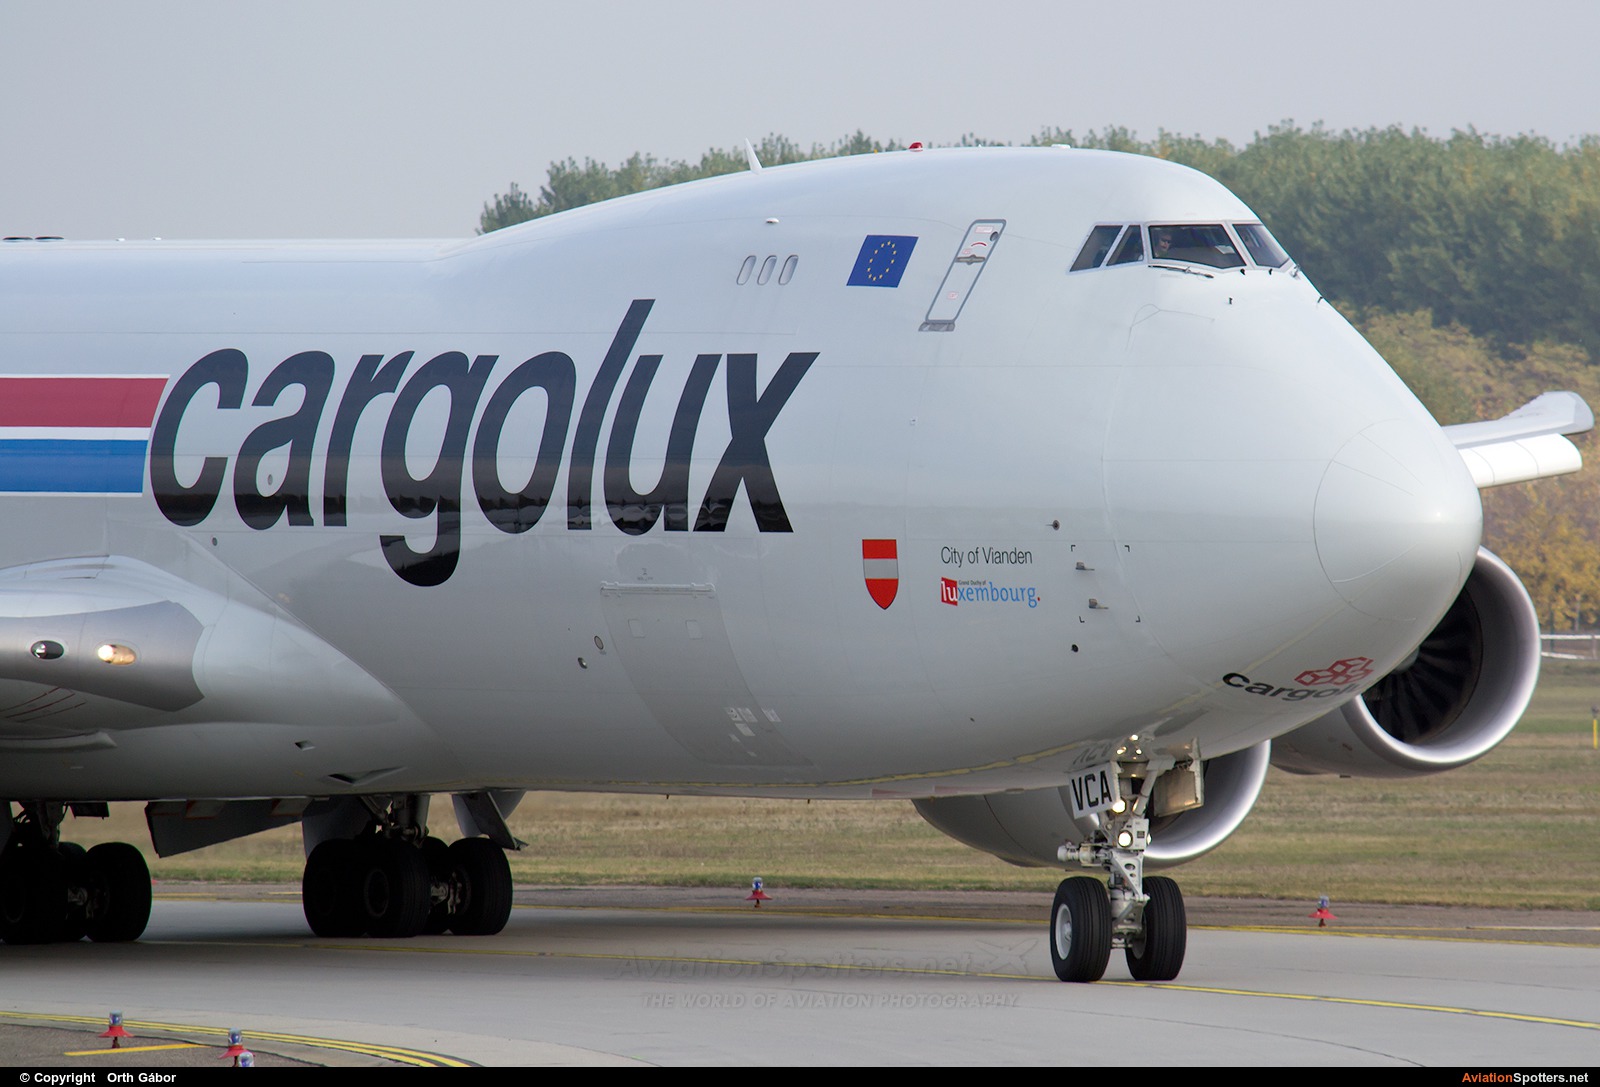 Cargolux  -  747-8R7F  (LX-VCA) By Orth Gábor (Roodkop)